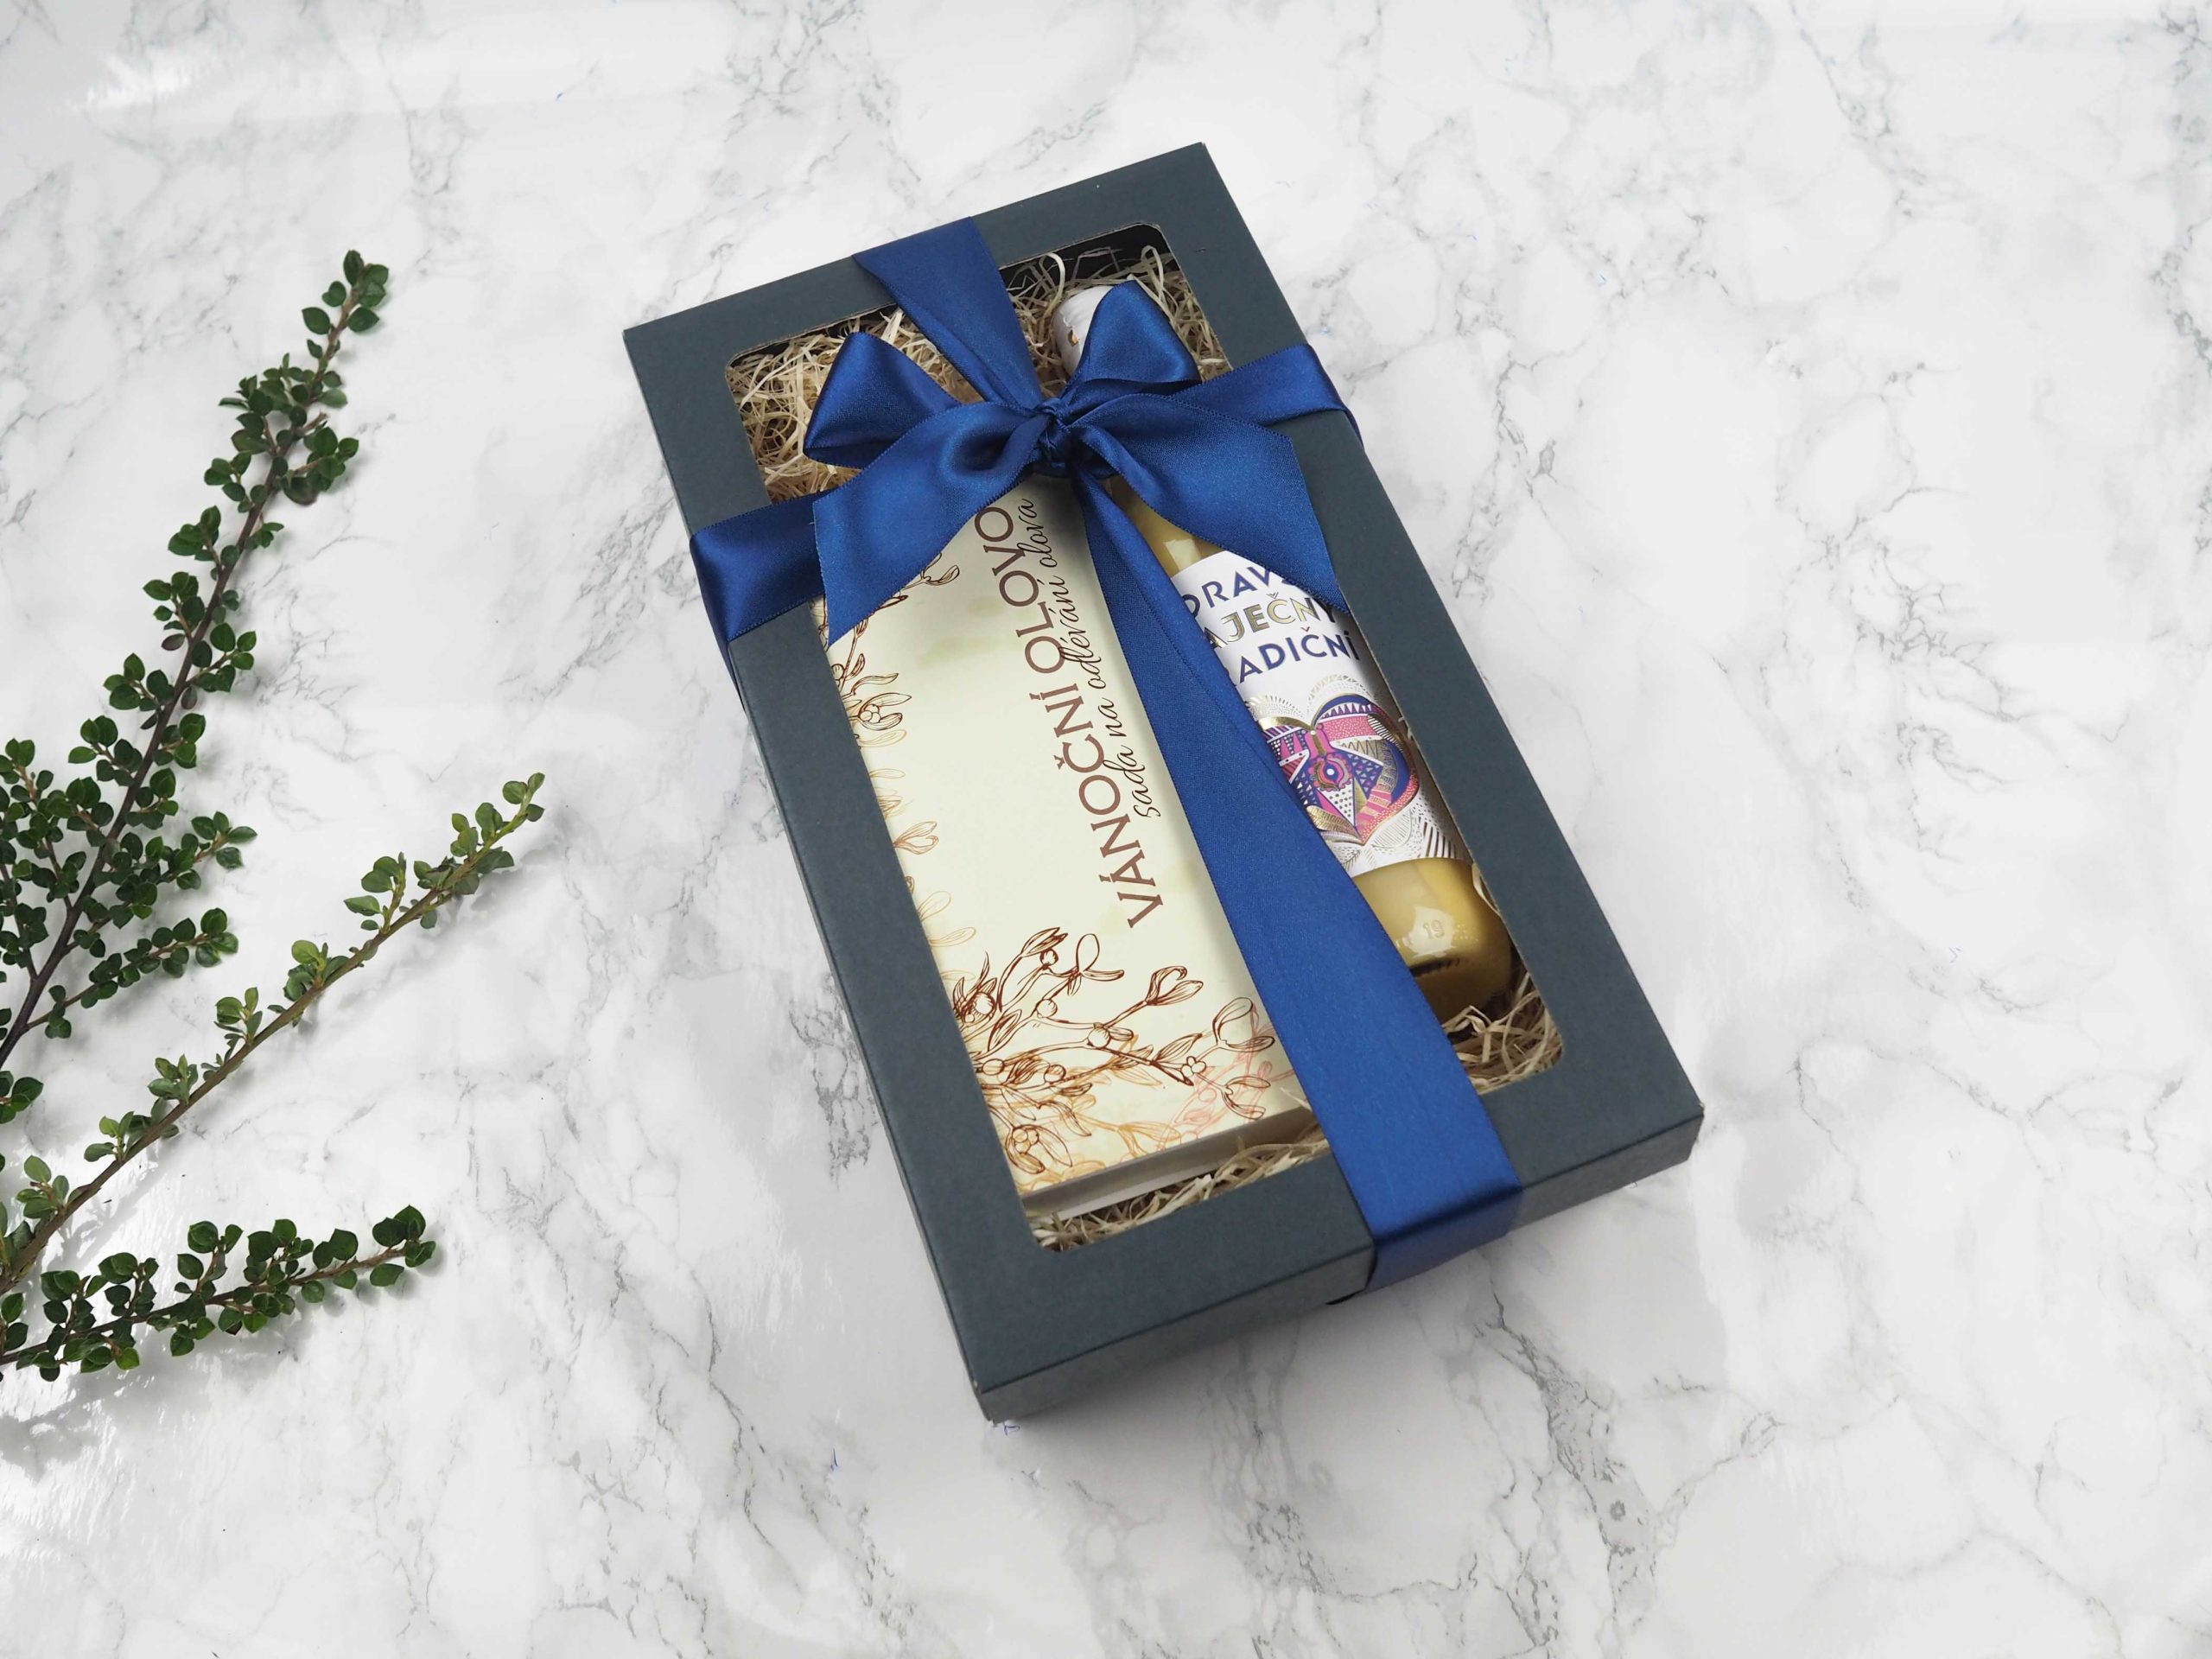 Dárkový balíček Lití olova v sobě obsahuje sadu na vánoční lití olova a Moravský vaječný likér.